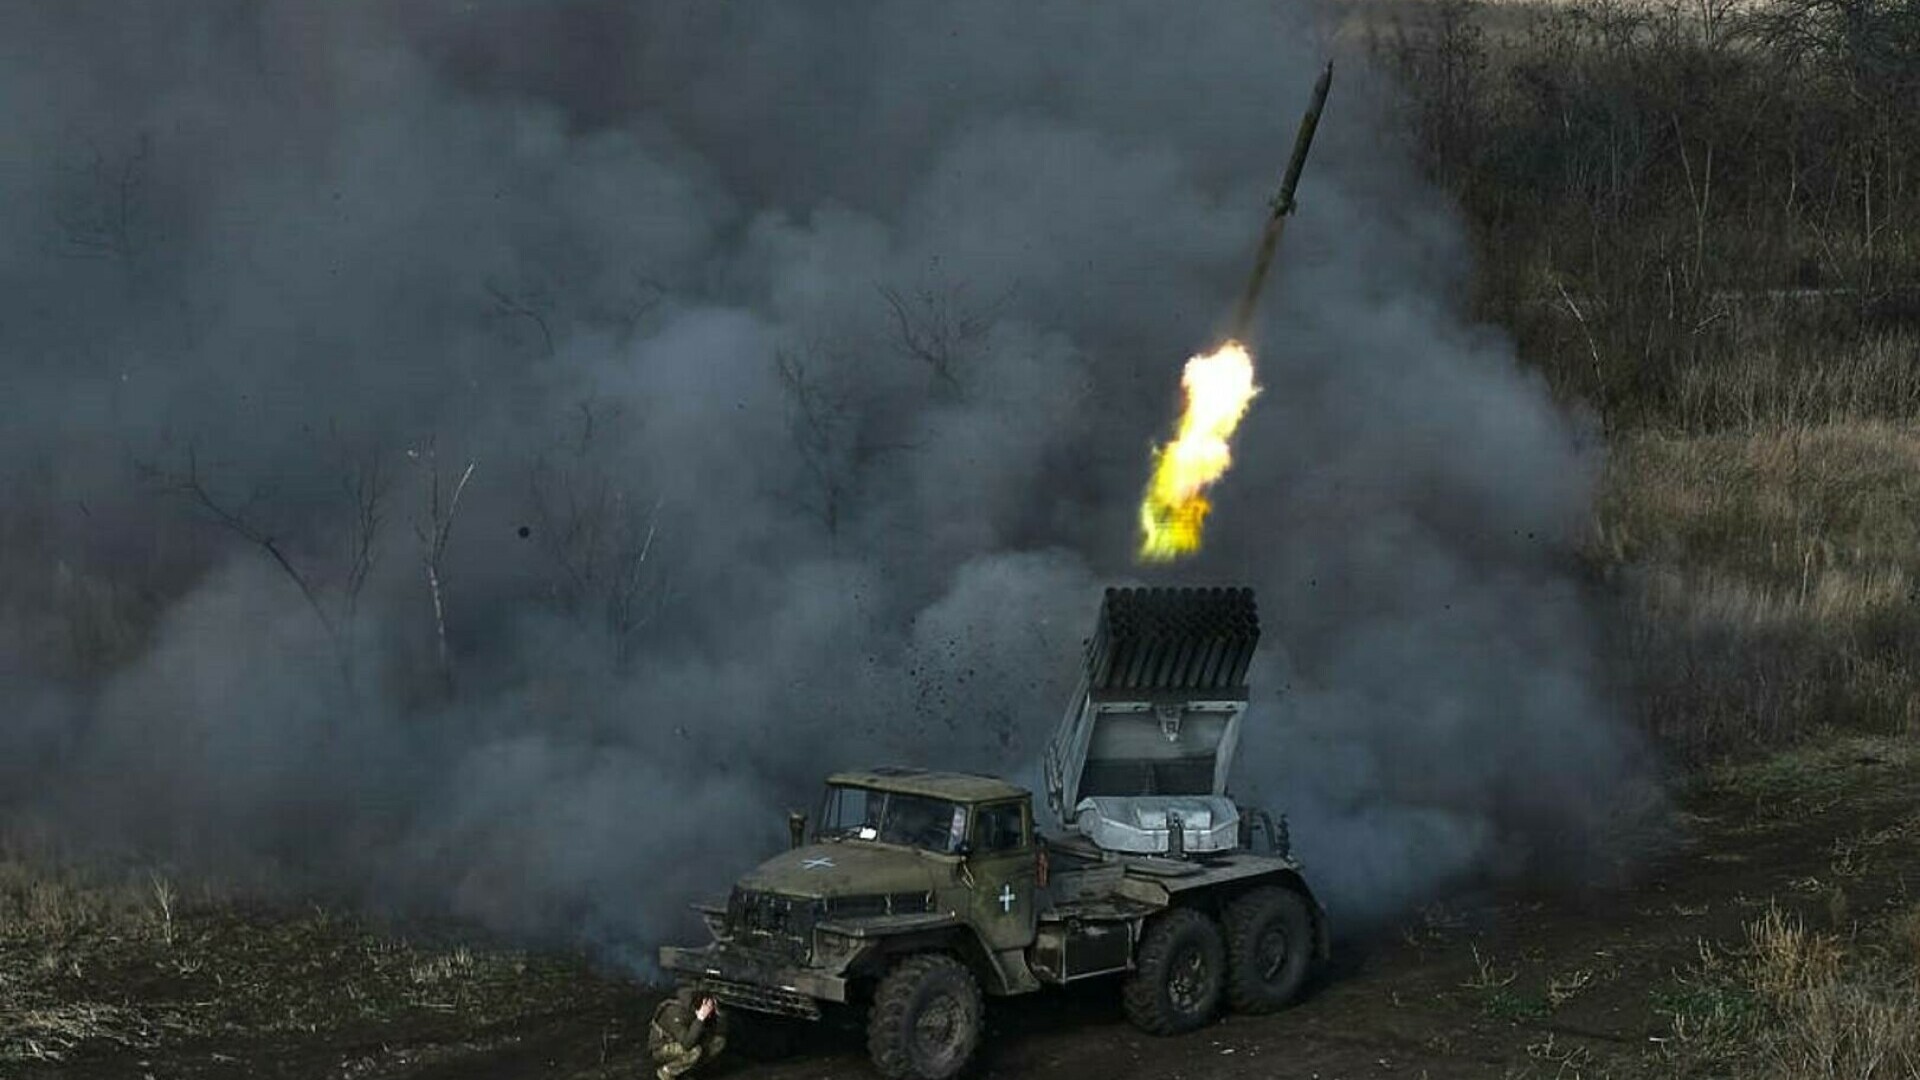 rachete ucraina